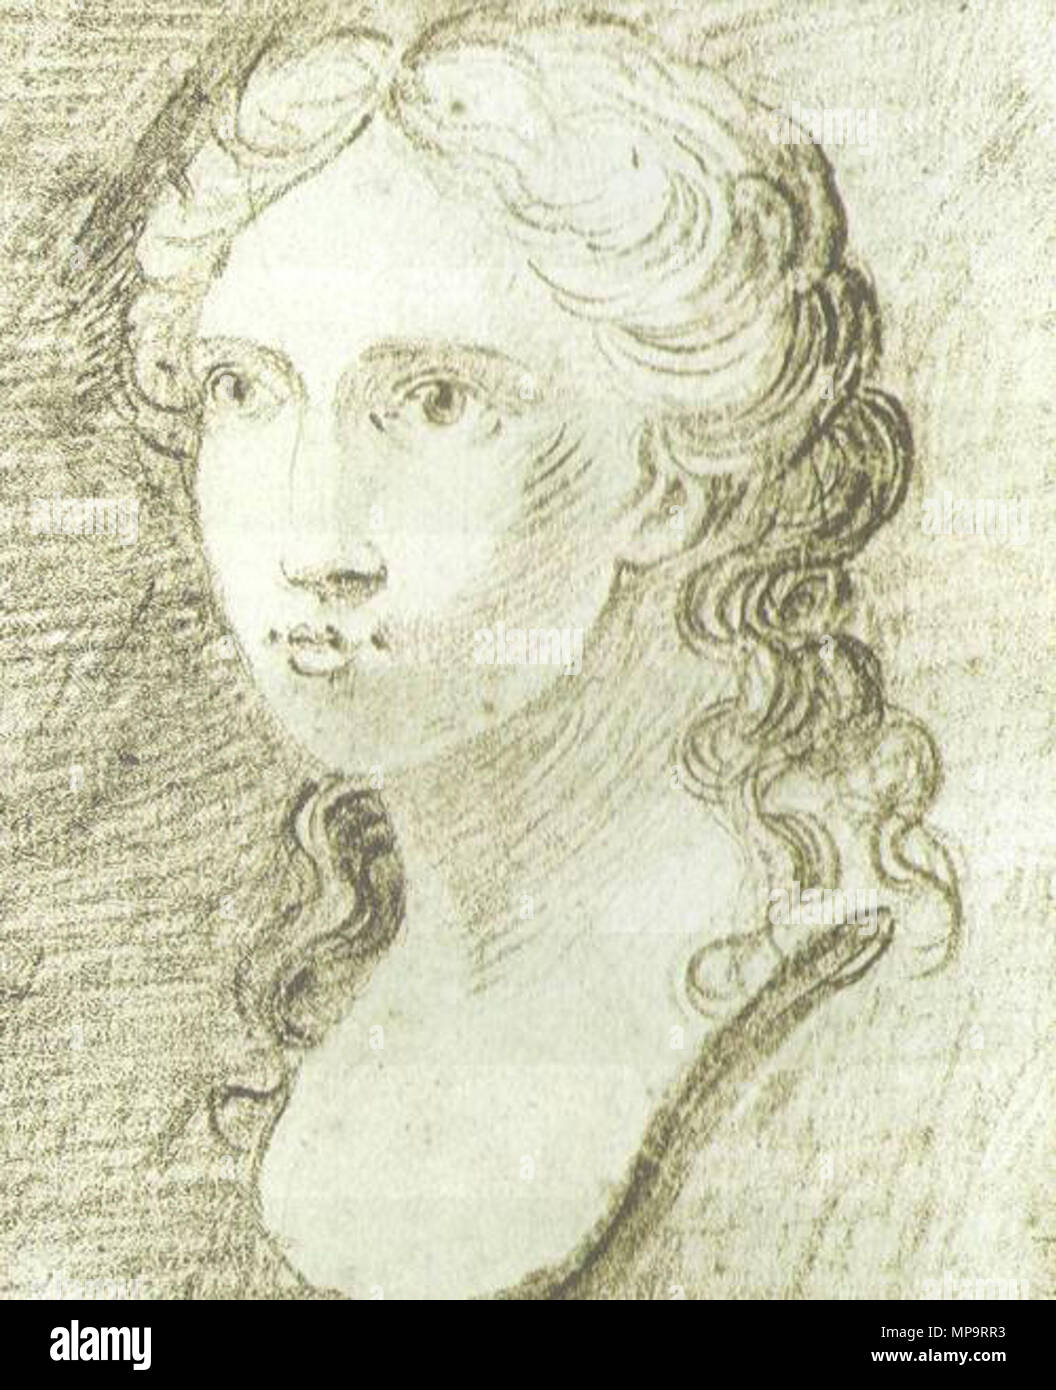 . Englisch: Portrait von Luisa Sanfelice. 18. Jahrhundert AD. Unbekannt 834 Luisa Sanfelice - Porträt Stockfoto